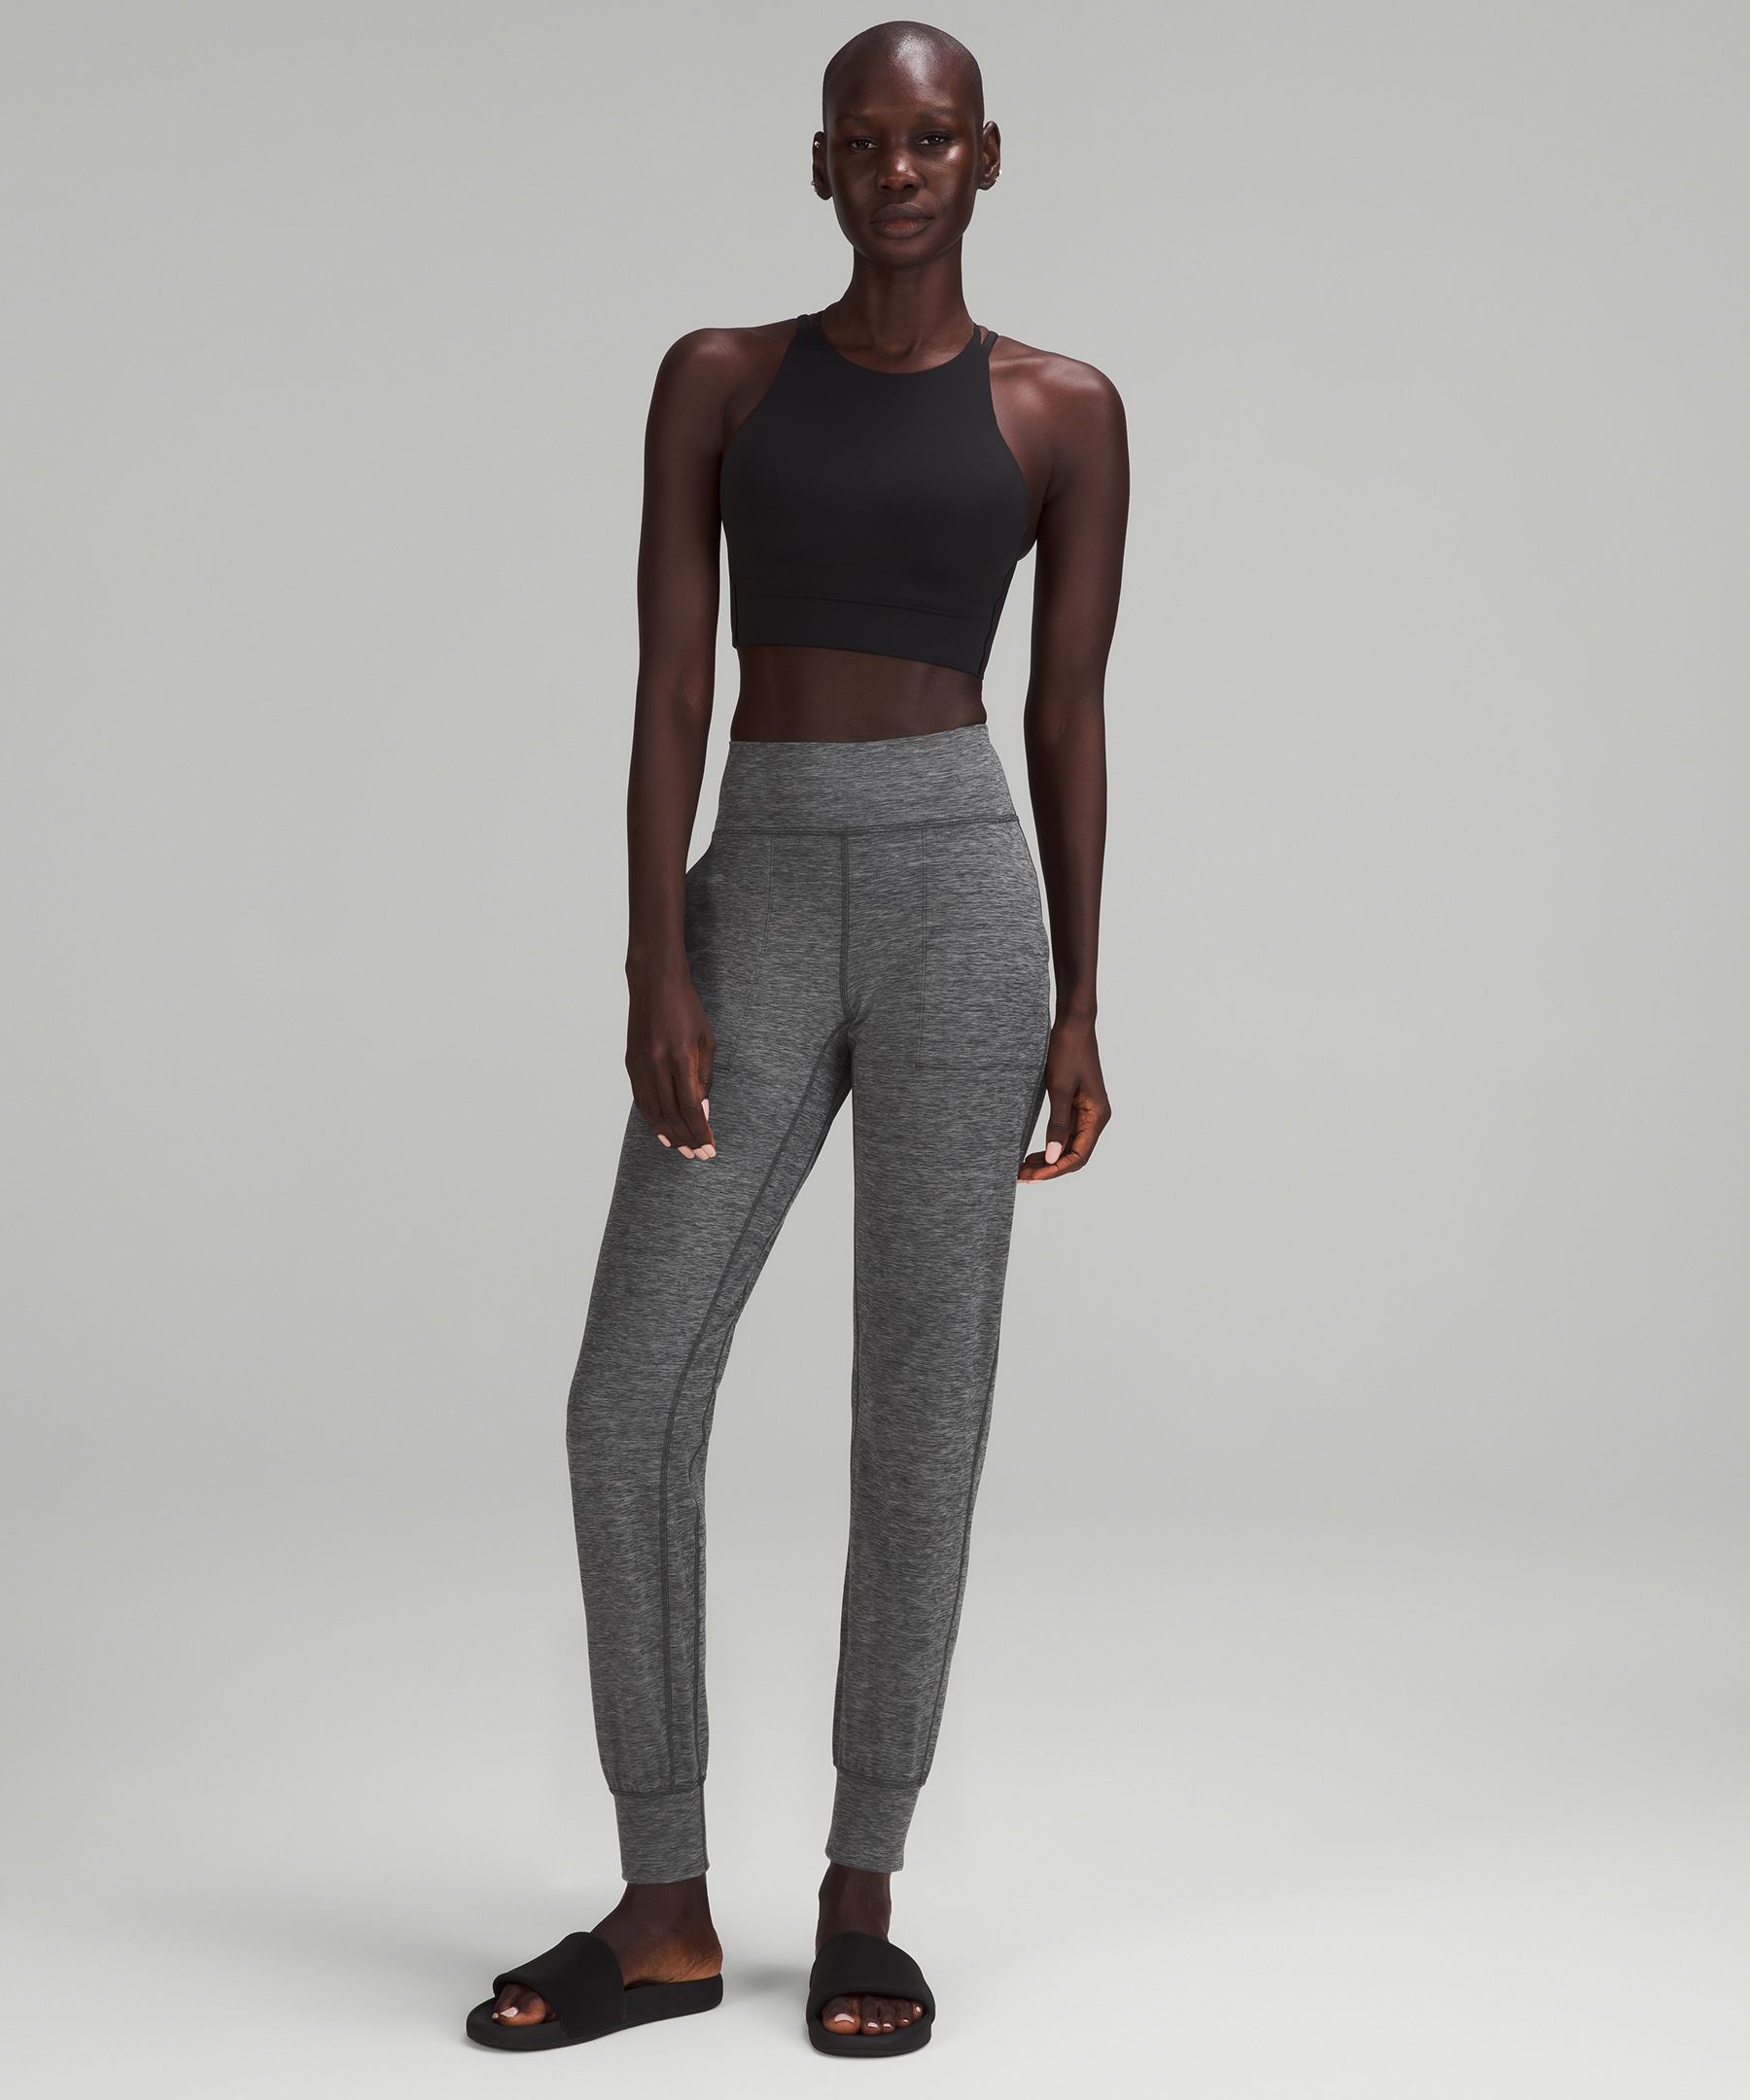 lululemon Align Jogger High Rise Size 8 Nulu Black Woman's Crop Pants